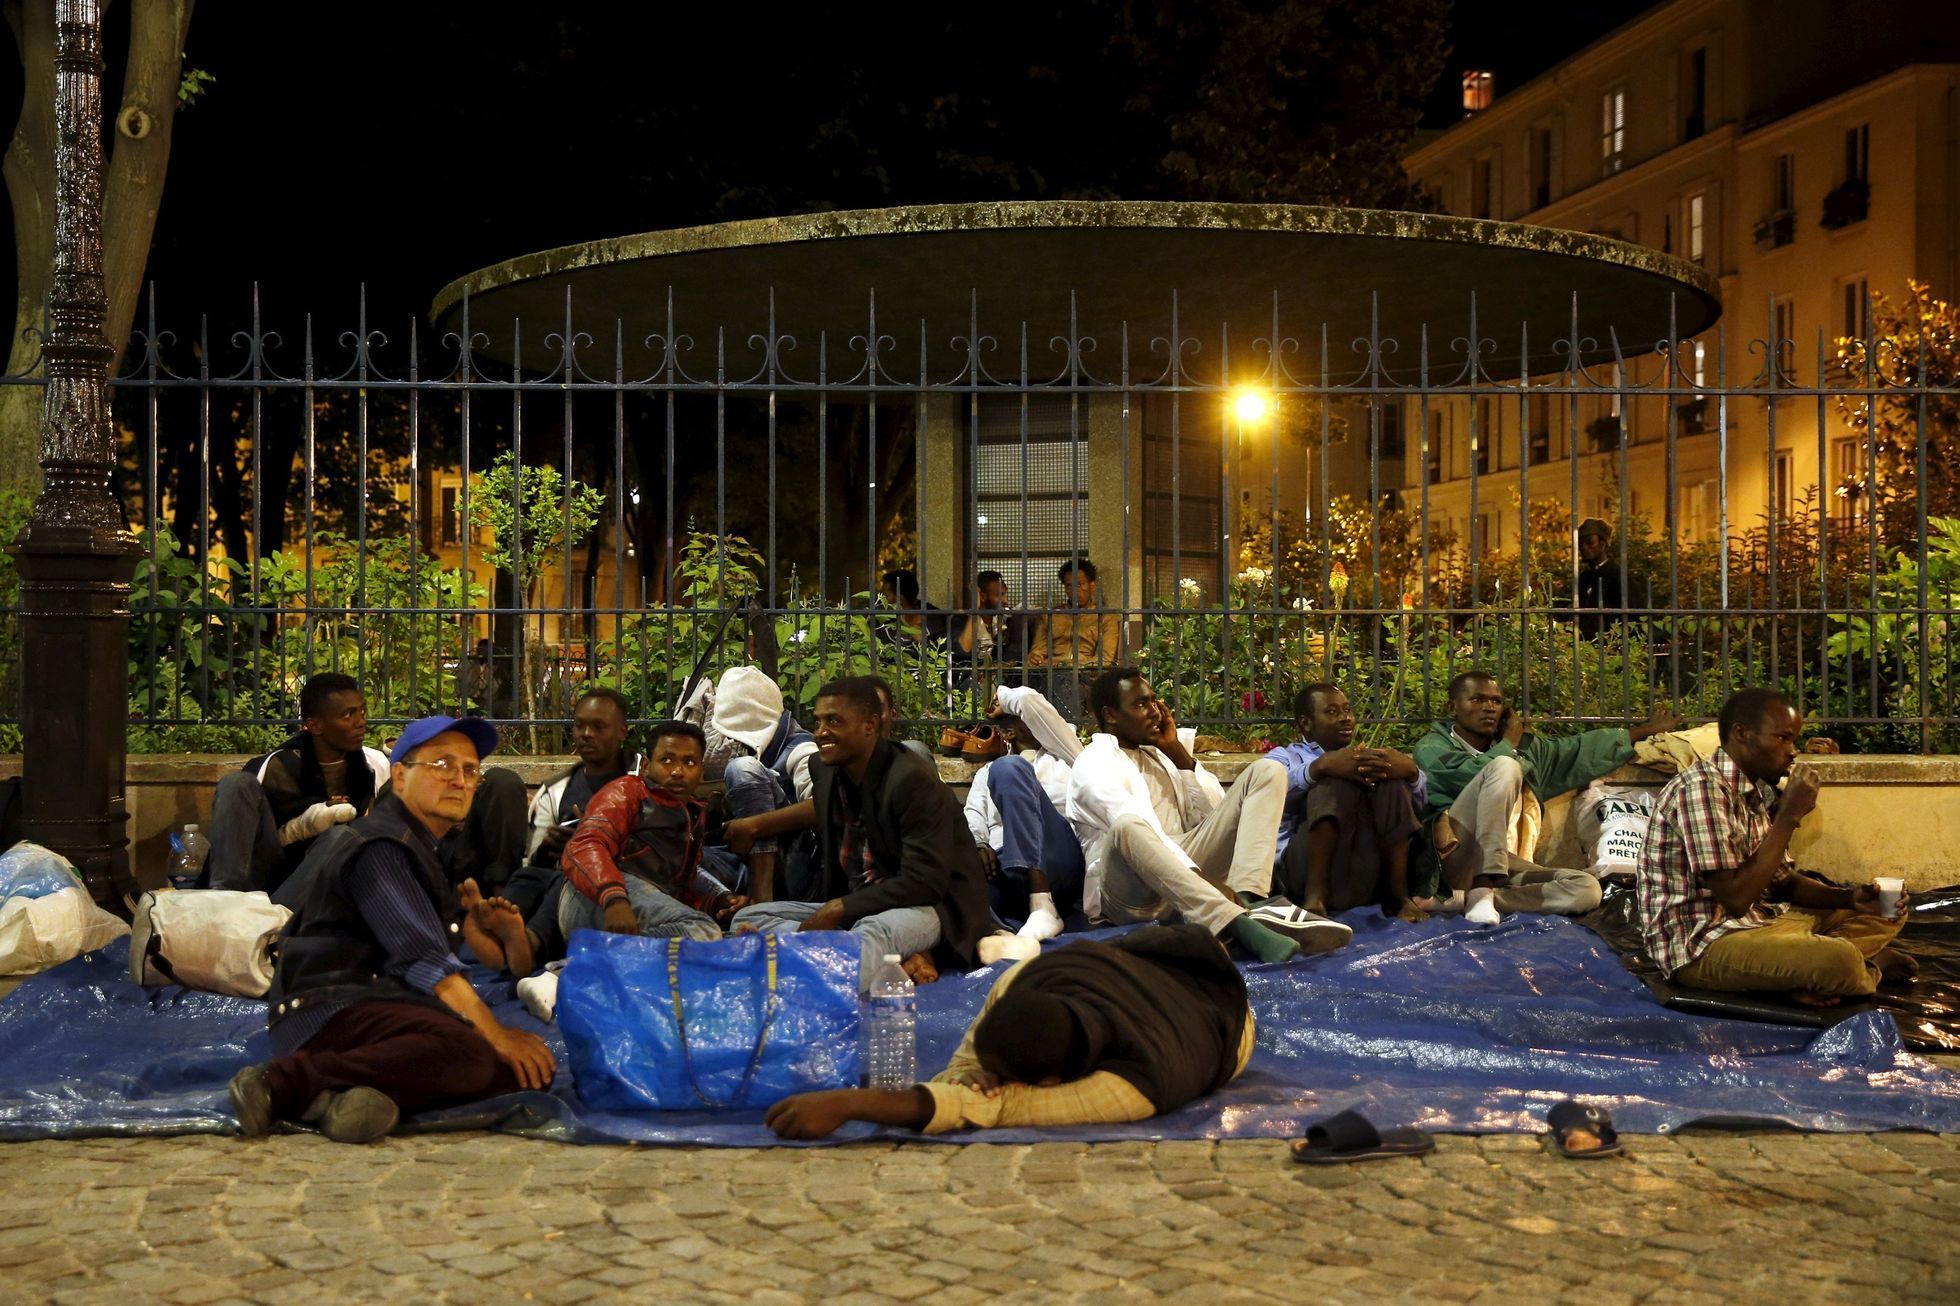 Francie - Paříž - Cesta do Evropy - uprchlíci